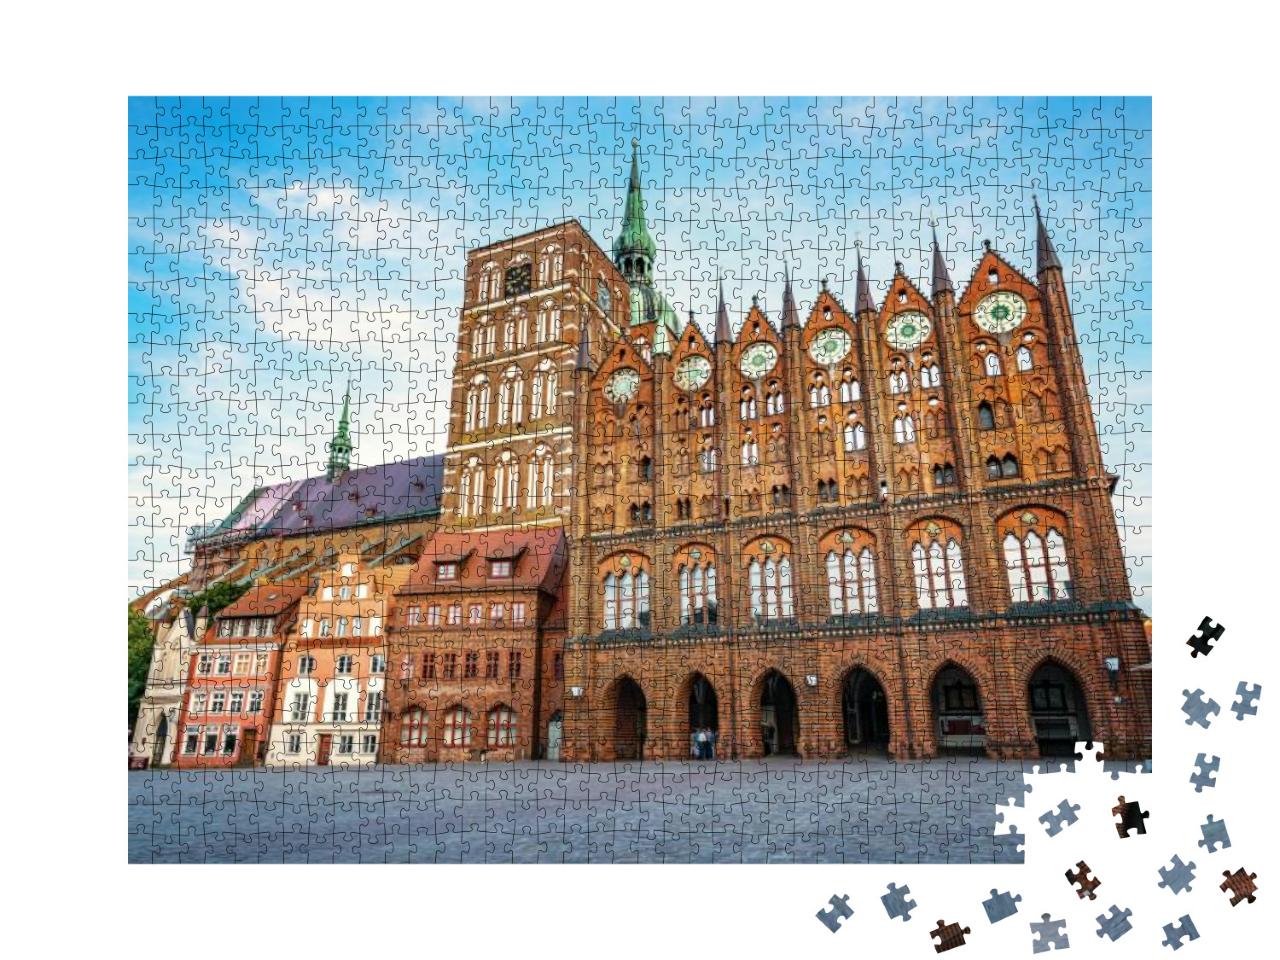 Puzzle 1000 Teile „Hansestadt Stralsund, historisches Rathaus und Nikolaikirche“